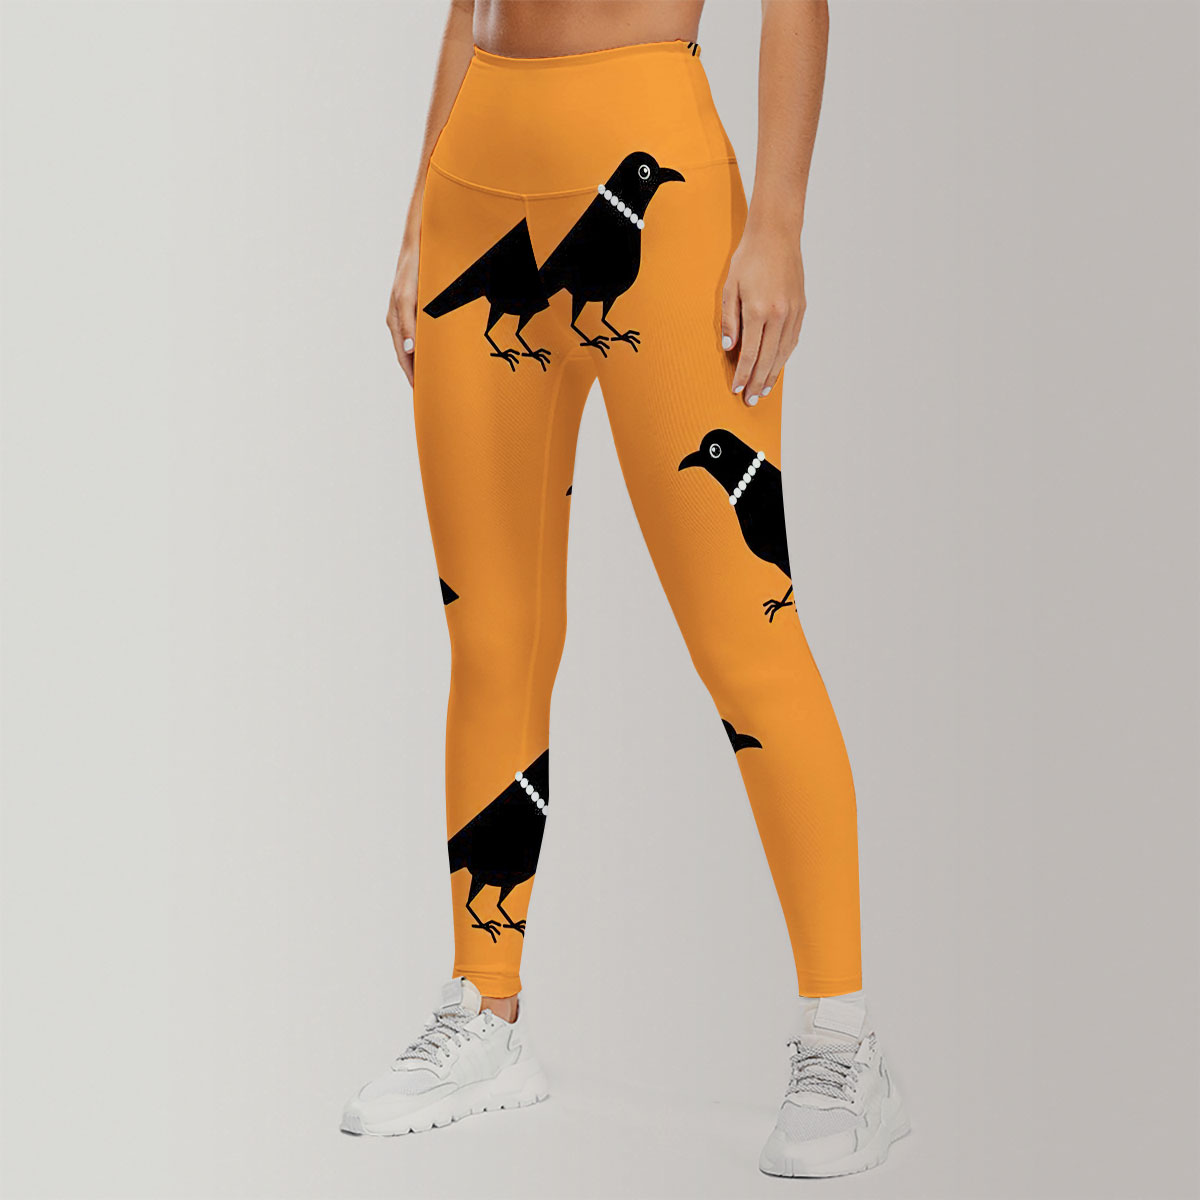 Lady Crow Orange Background Legging